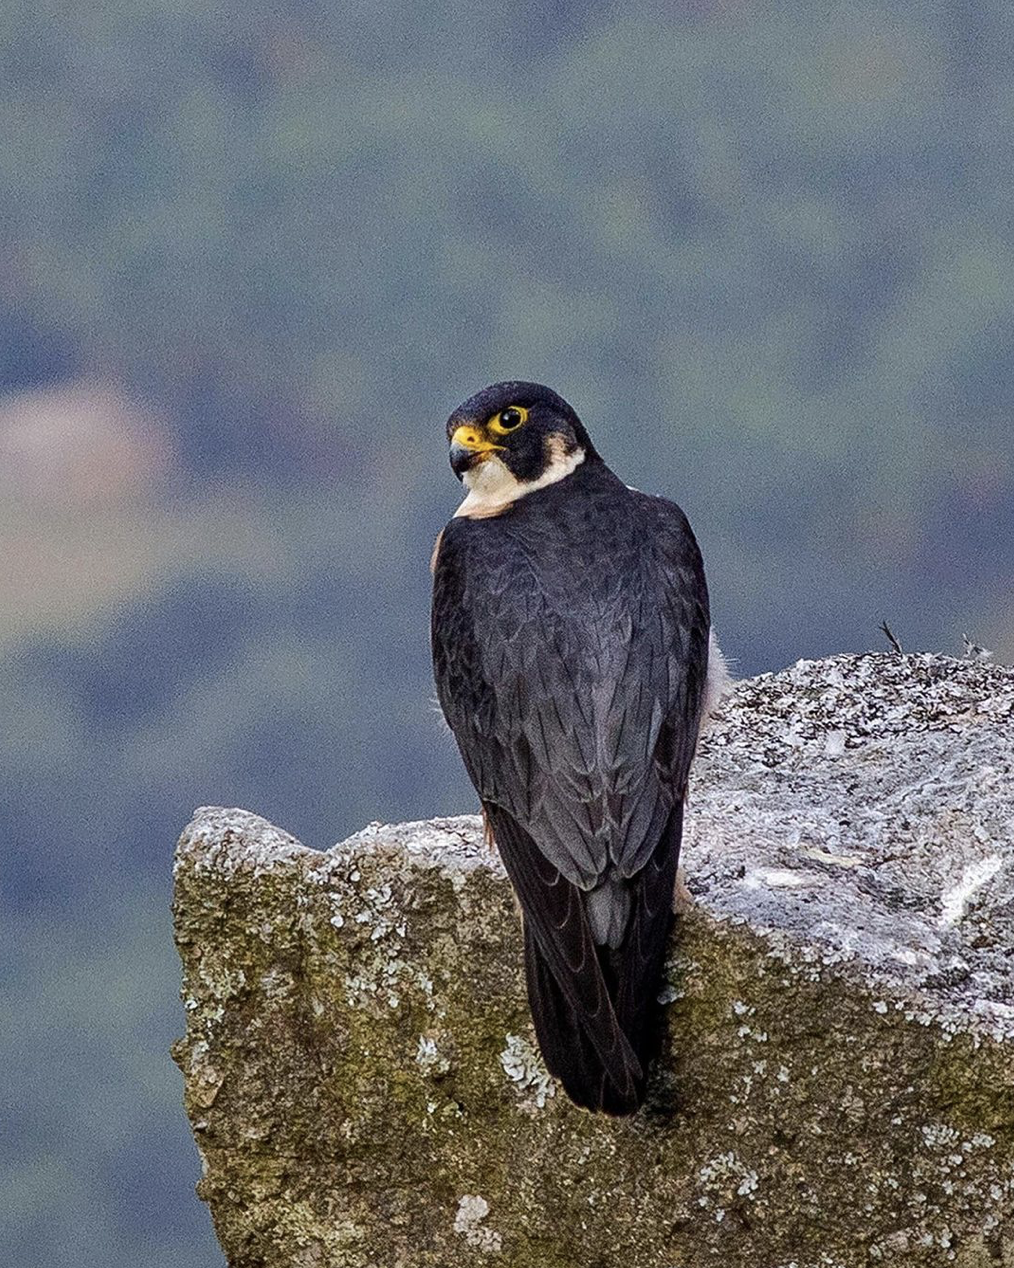 The shaheen falcon